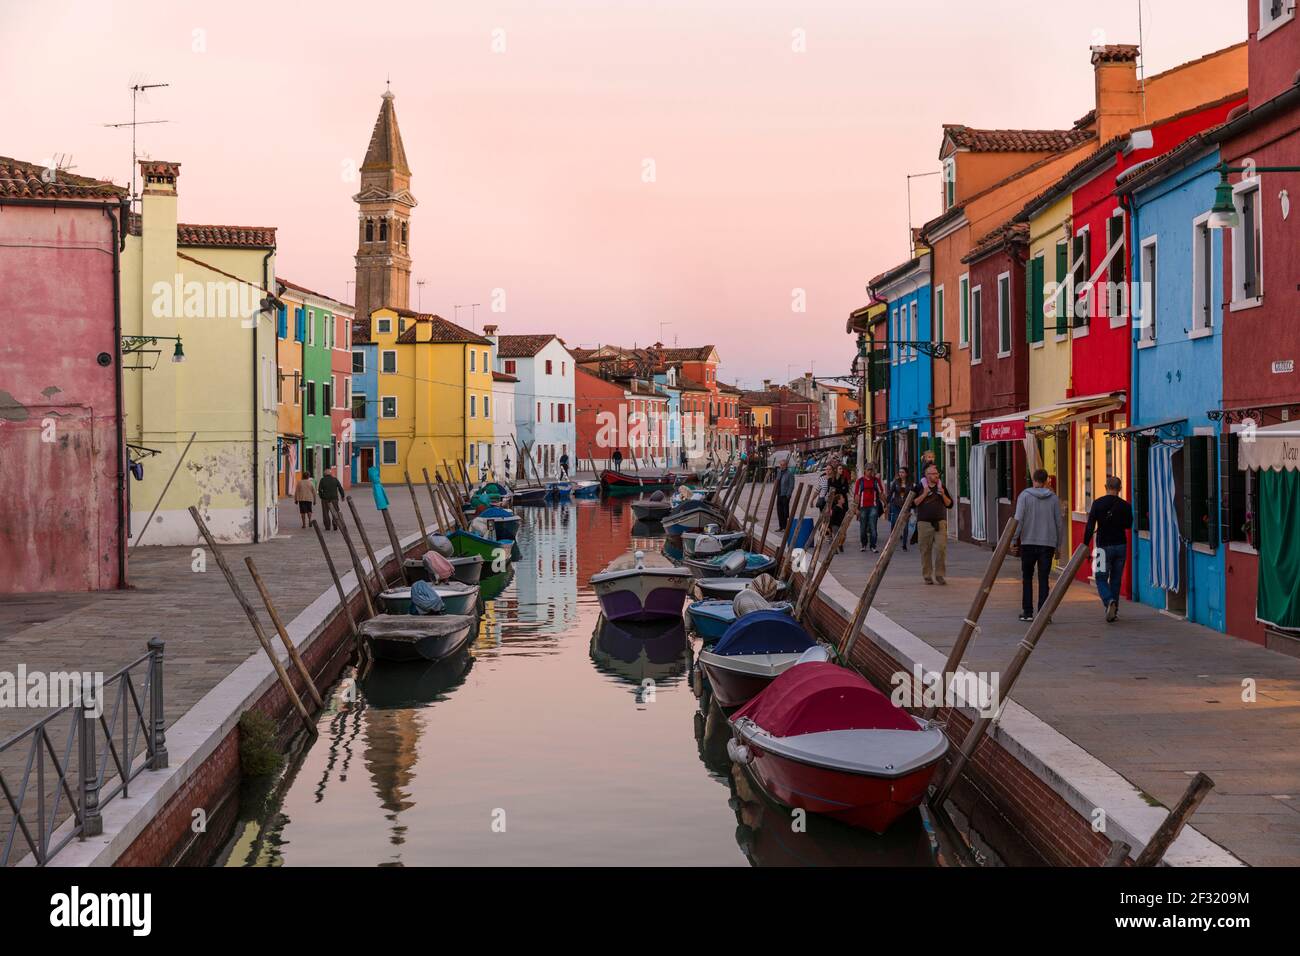 Die venezianische Insel Burano, Boote auf einem Kanal, bunte Häuser und Geschäfte in der Dämmerung mit Menschen auf den Gehwegen. Stockfoto